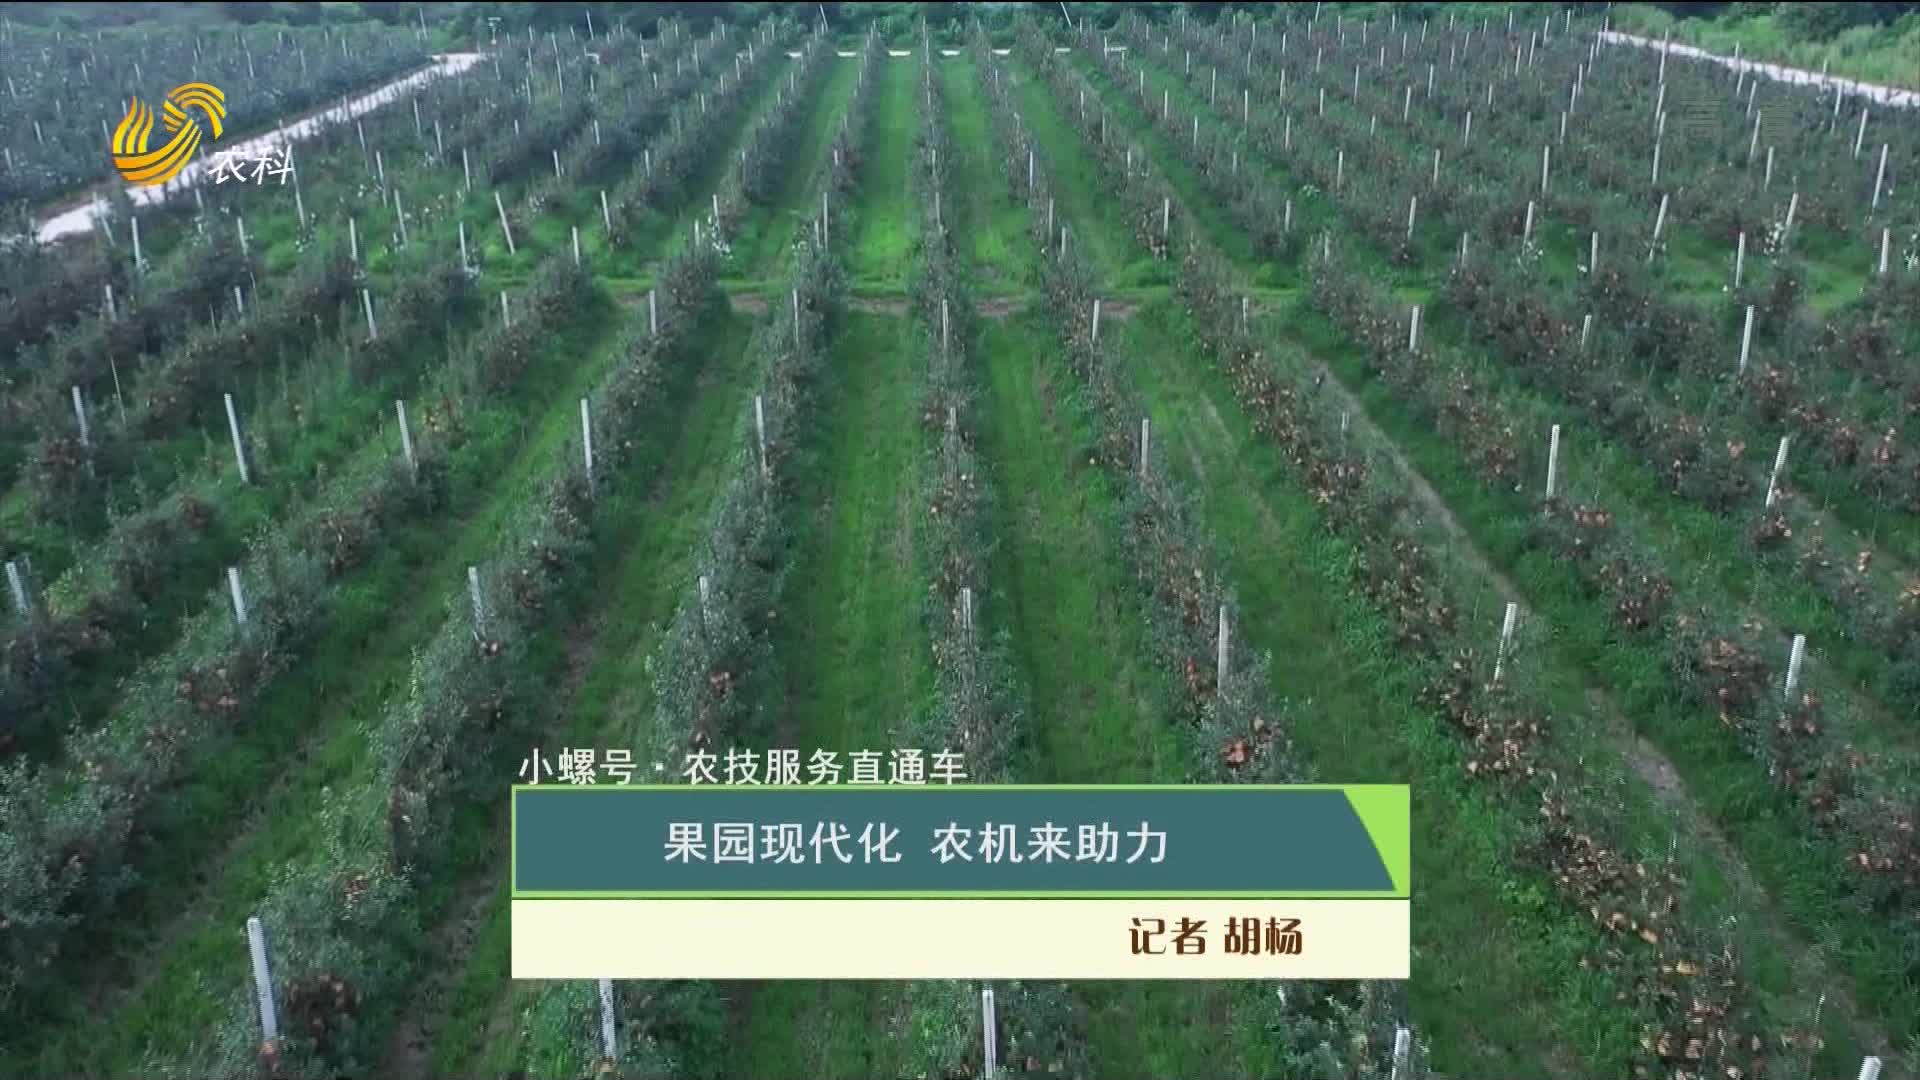 【小螺号·农技服务直通车】果园现代化 农机来助力